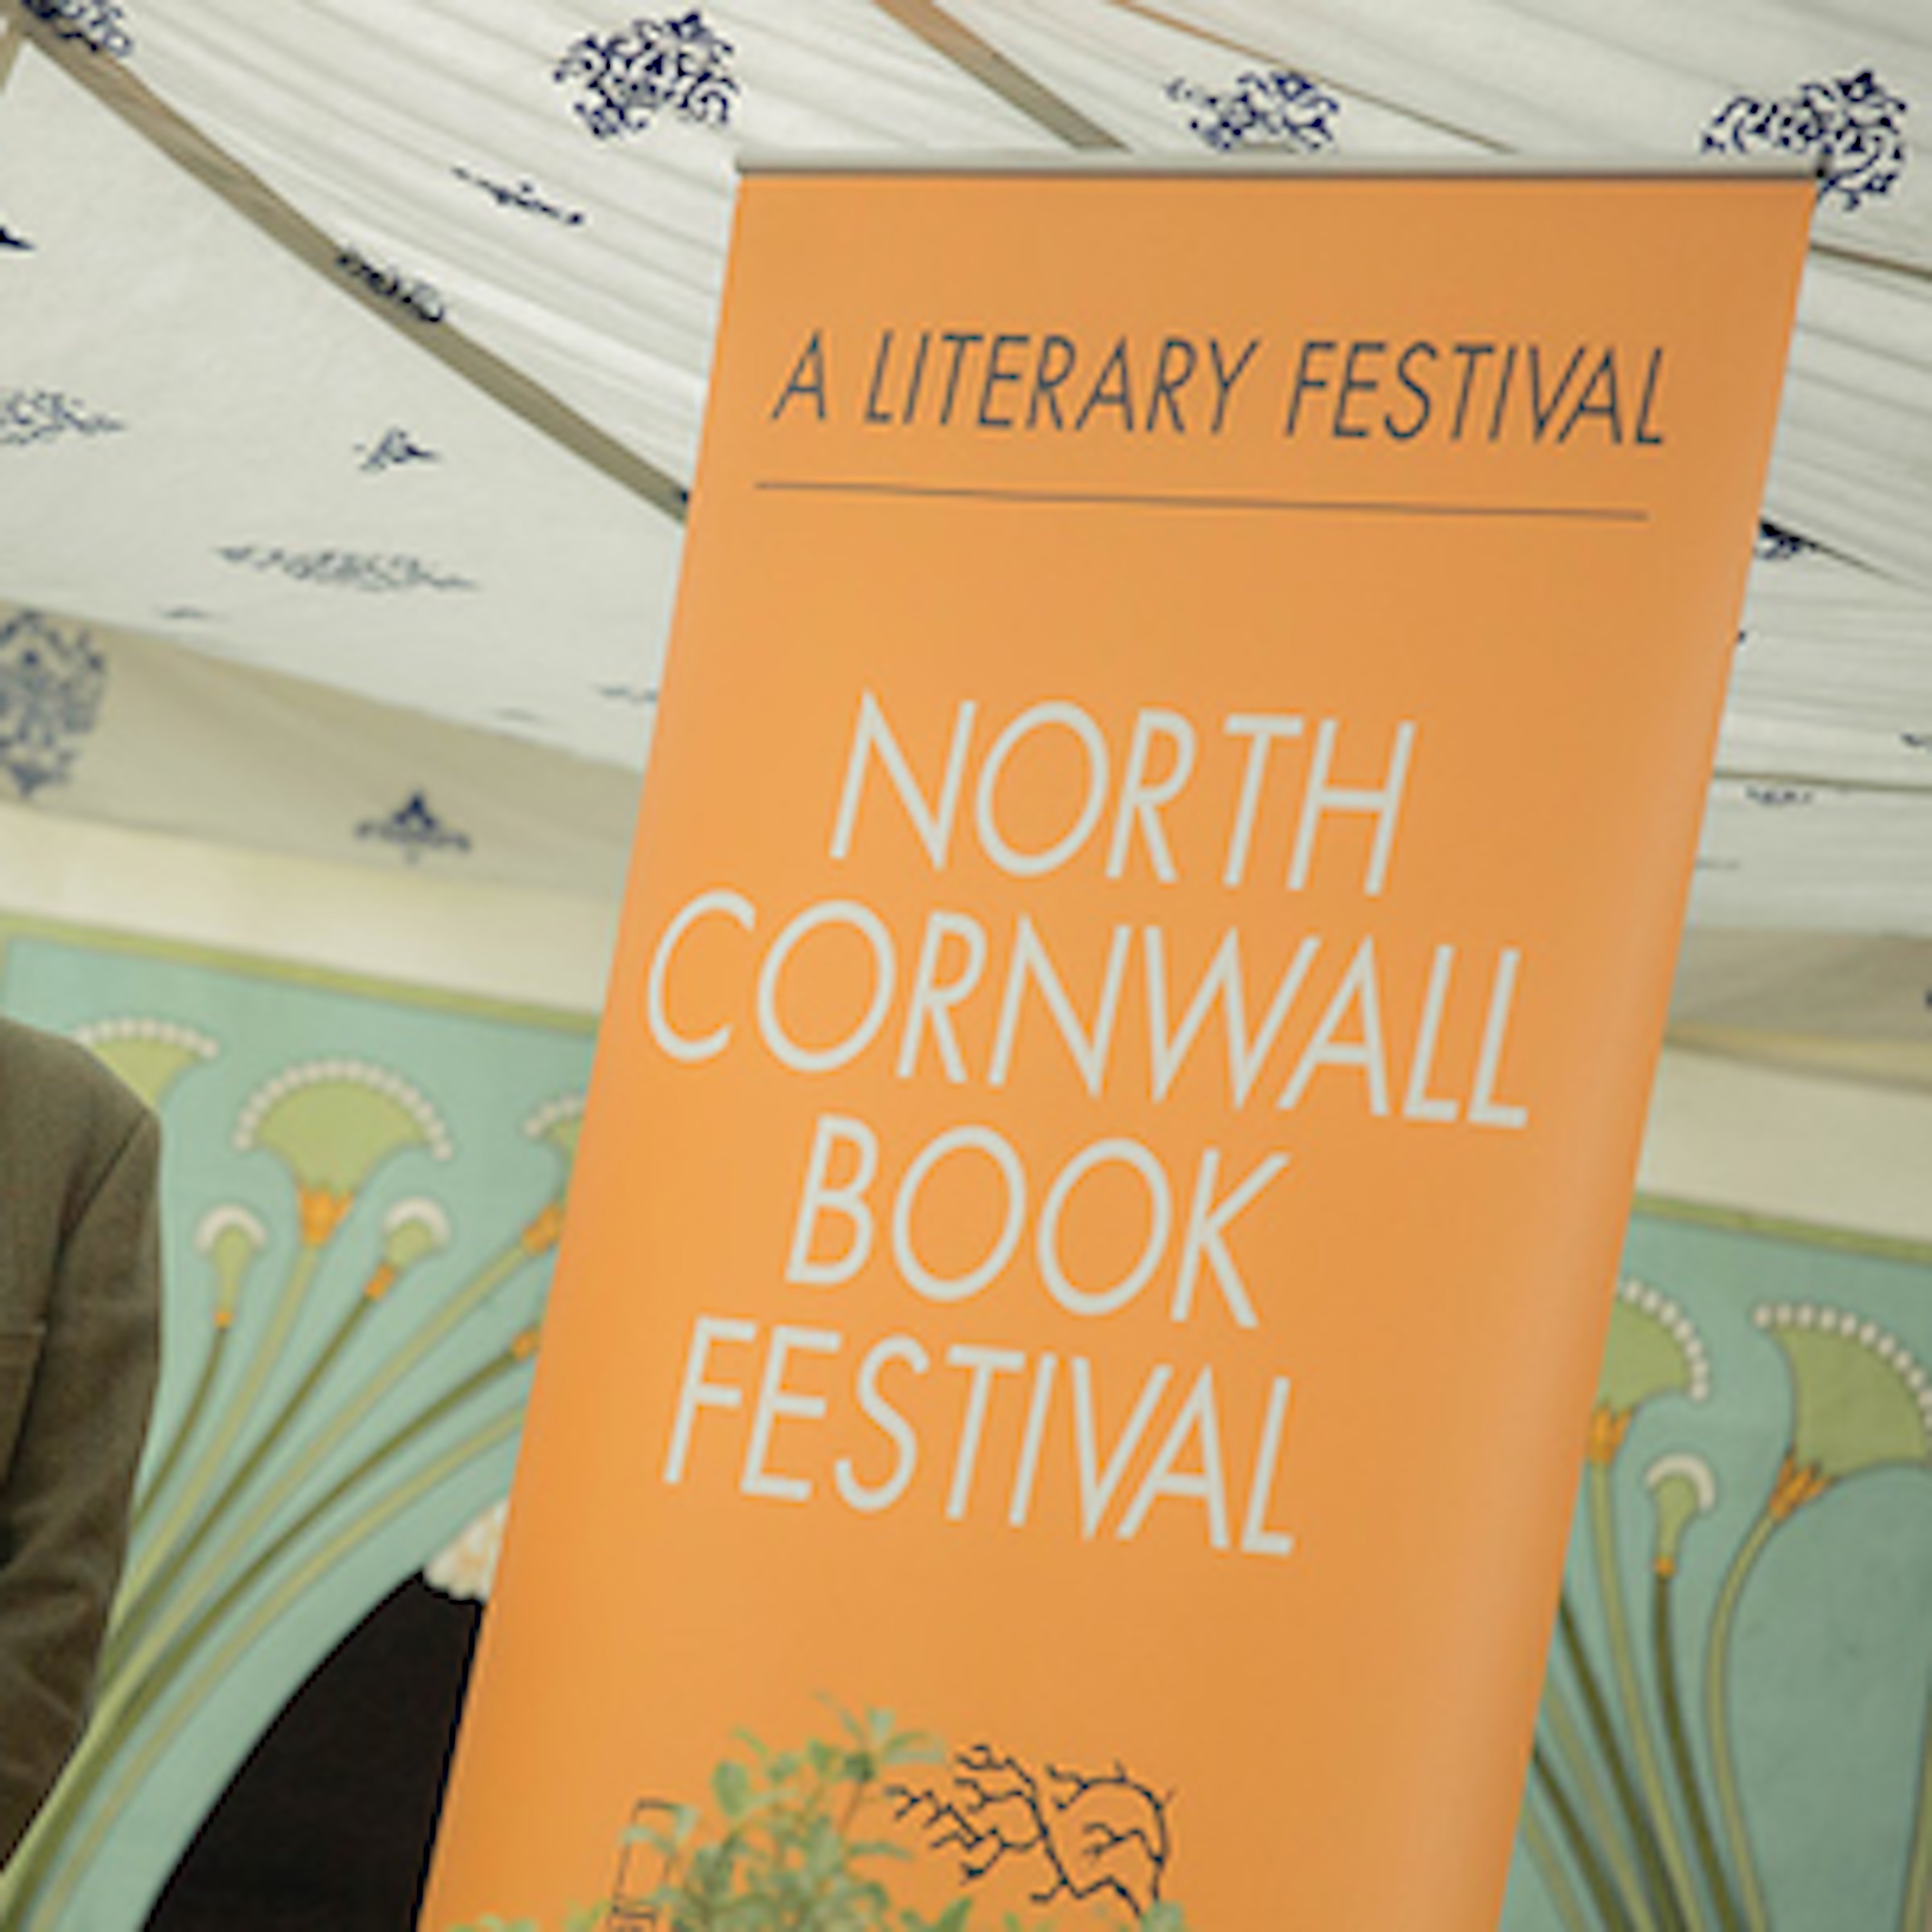 North Cornwall Book Festival